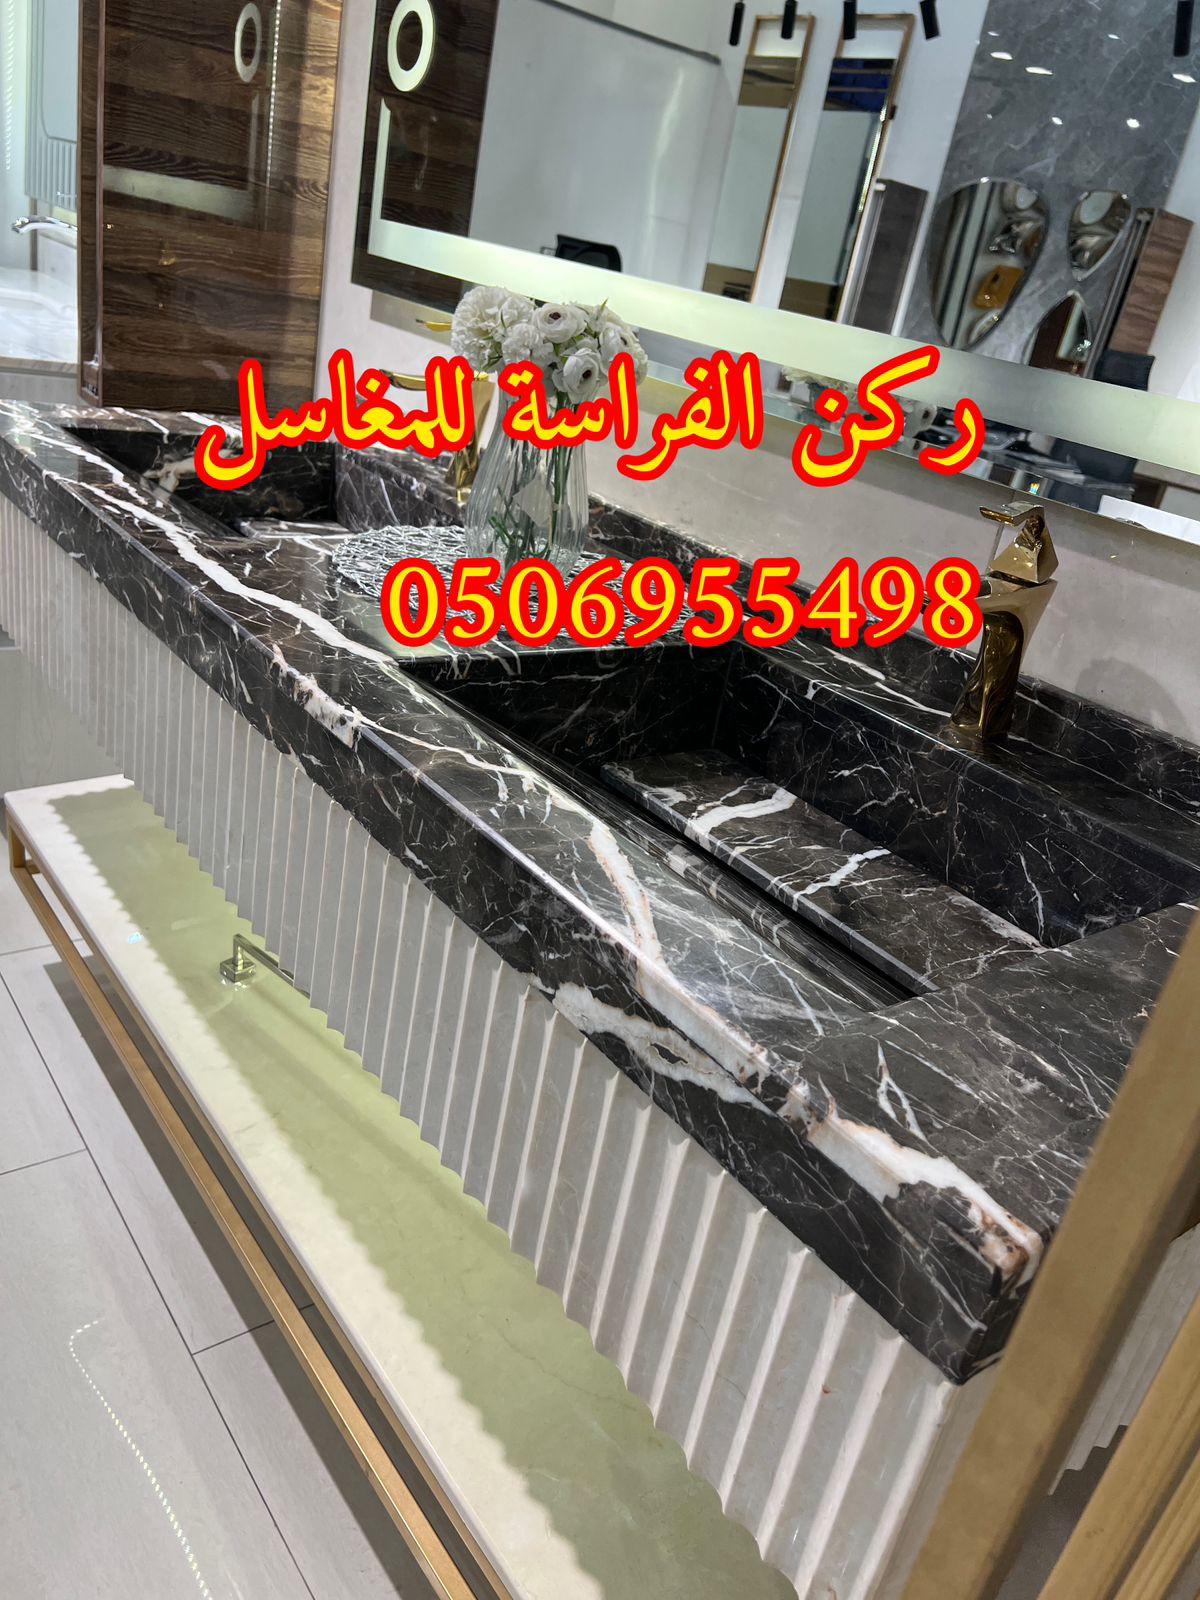 الرياض - تصاميم مغاسل رخام للمجالس في الرياض,0506955498 867719158